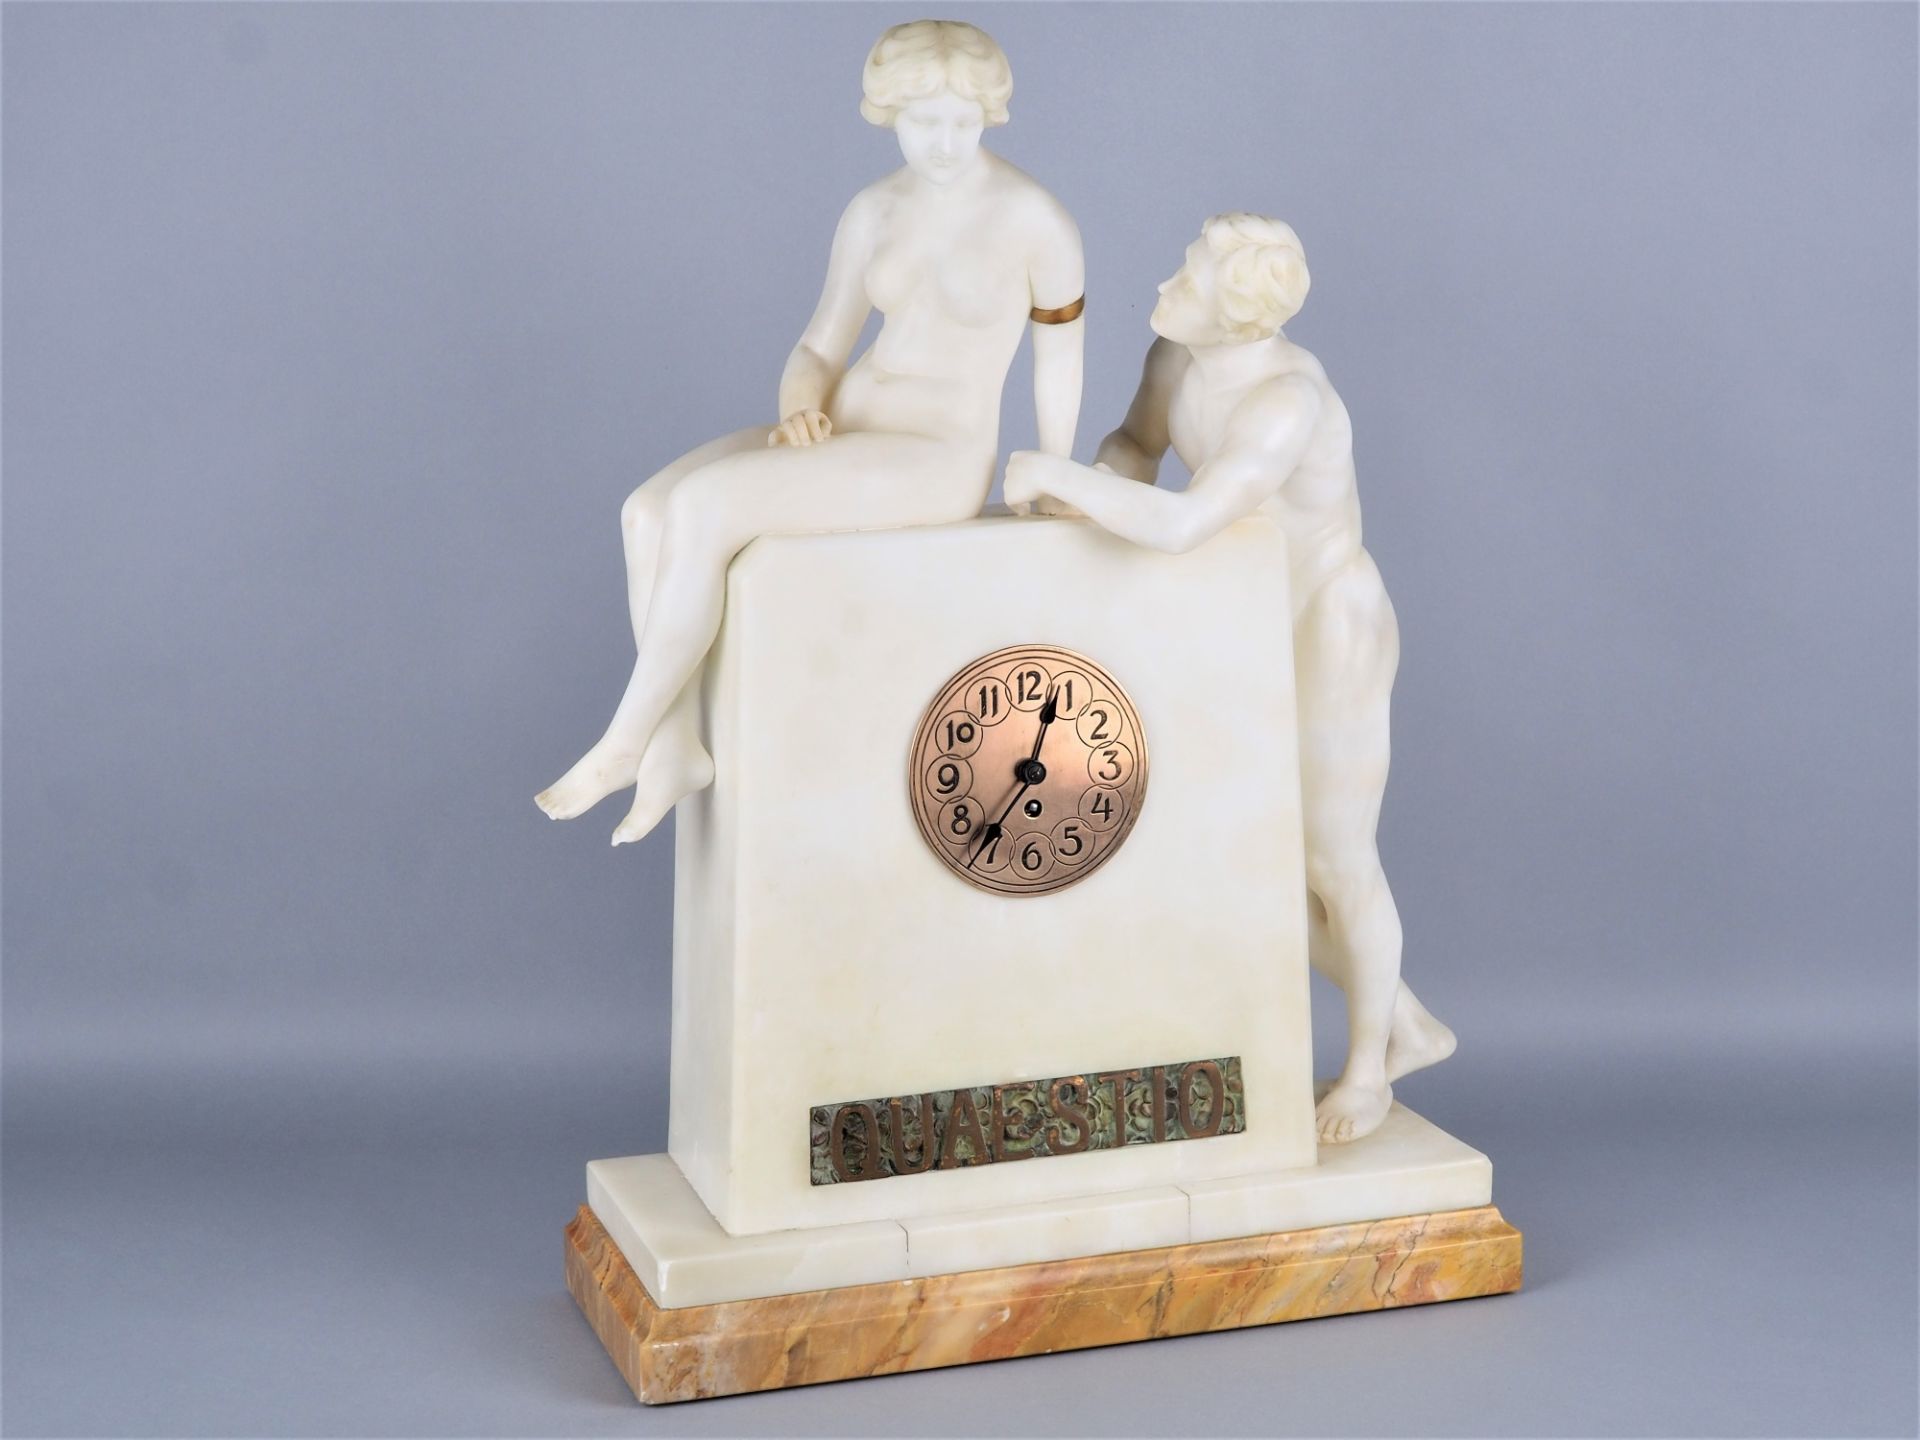 Large art nouveau "figure clock" around 1899